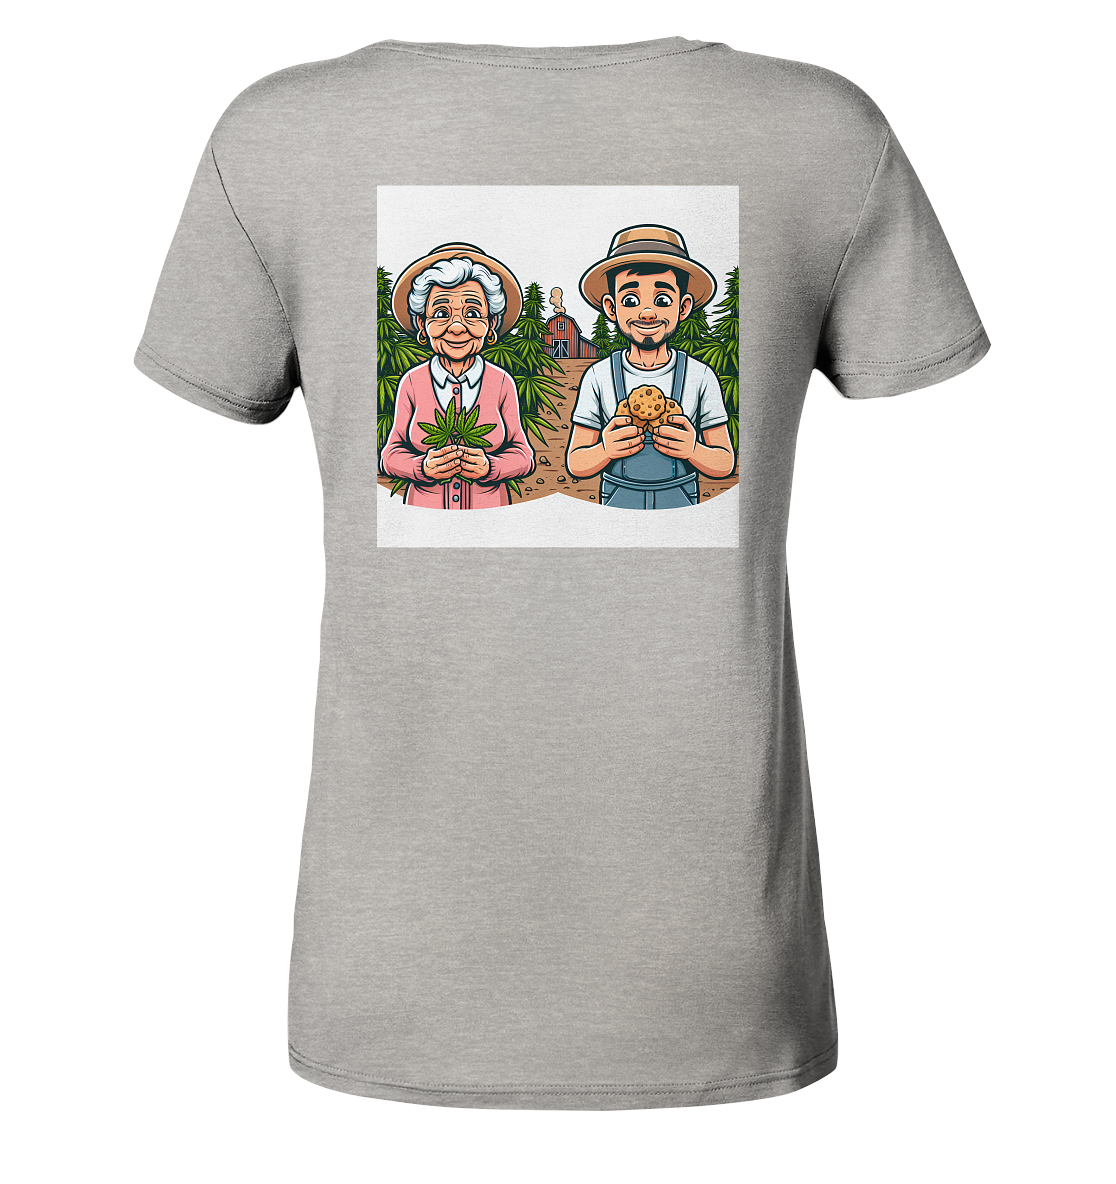 3rd-Eye Cookie Dreams Wear - Ladies Organic Shirt